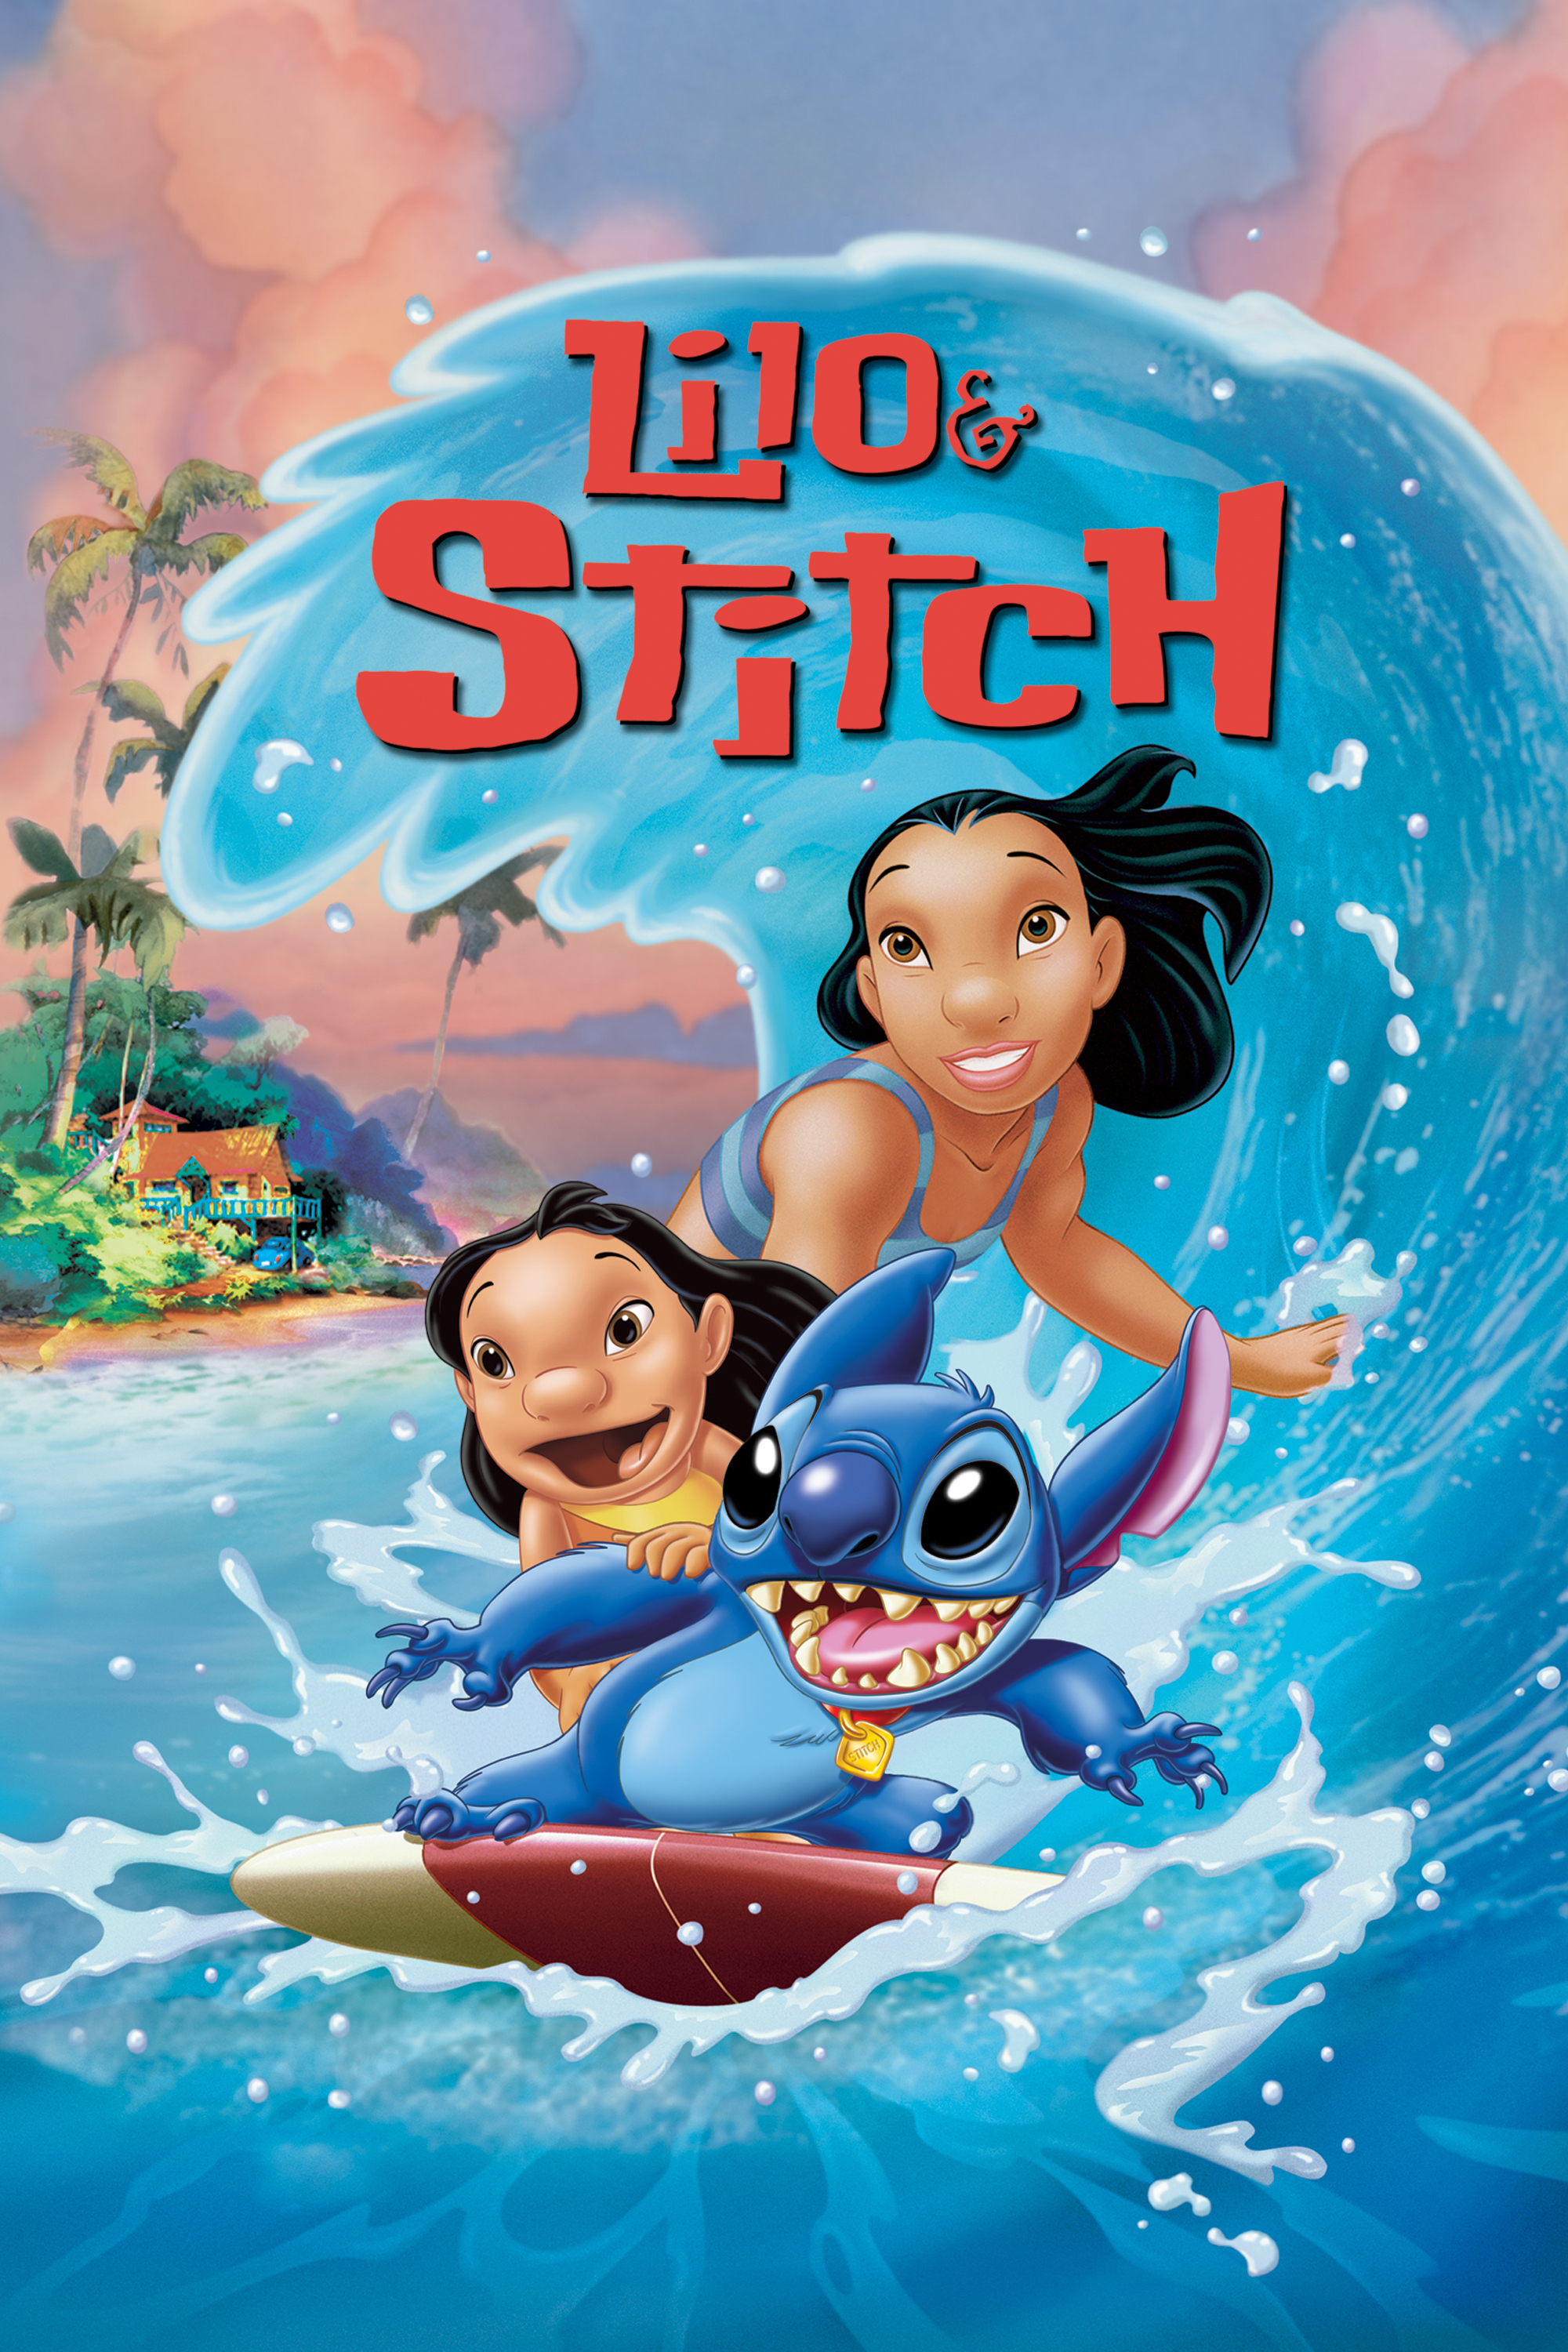 Plakat von "Lilo & Stitch"